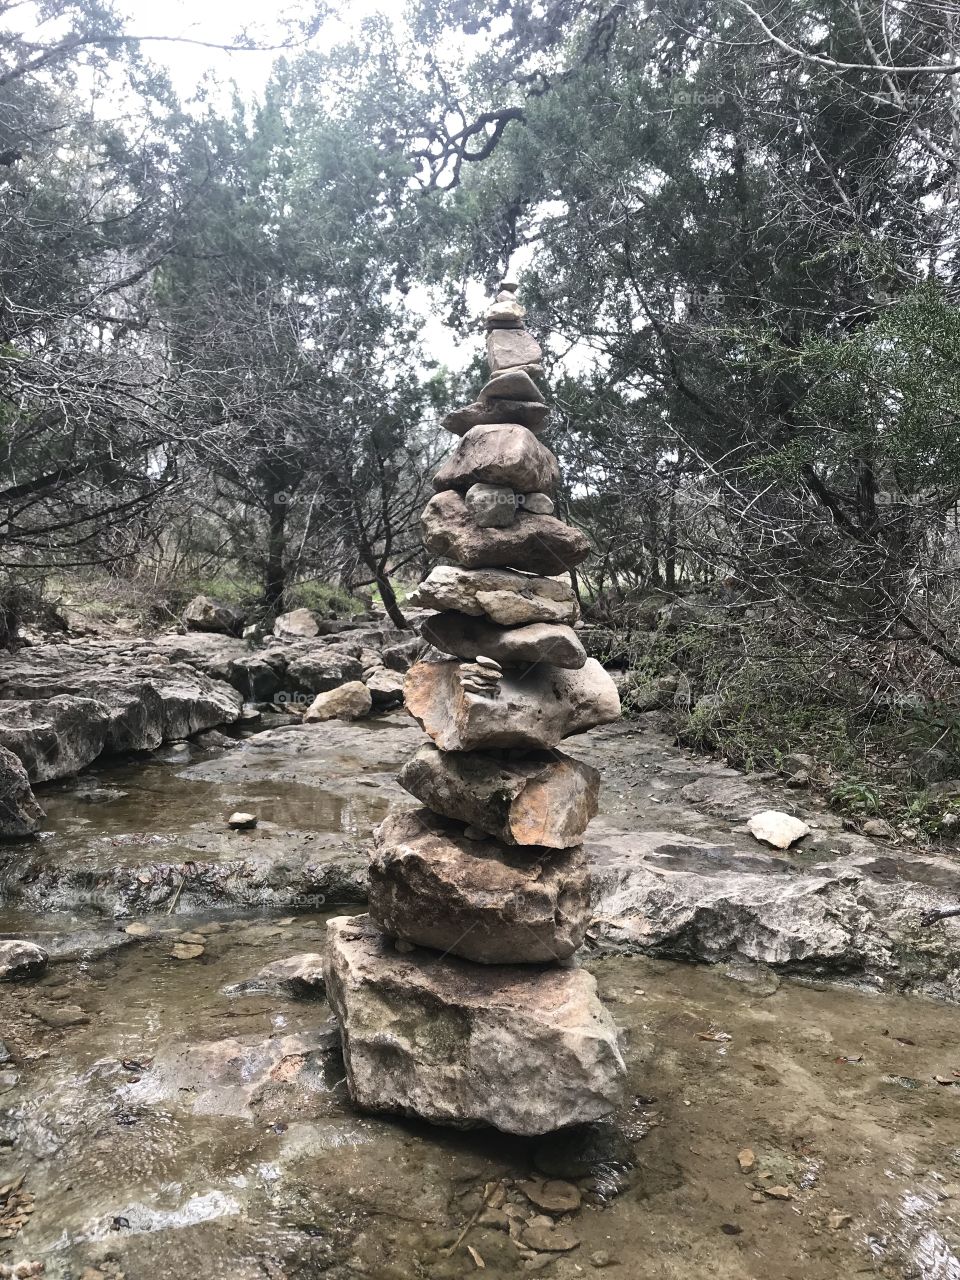 Rocks on rocks, on rocks, on rocks.